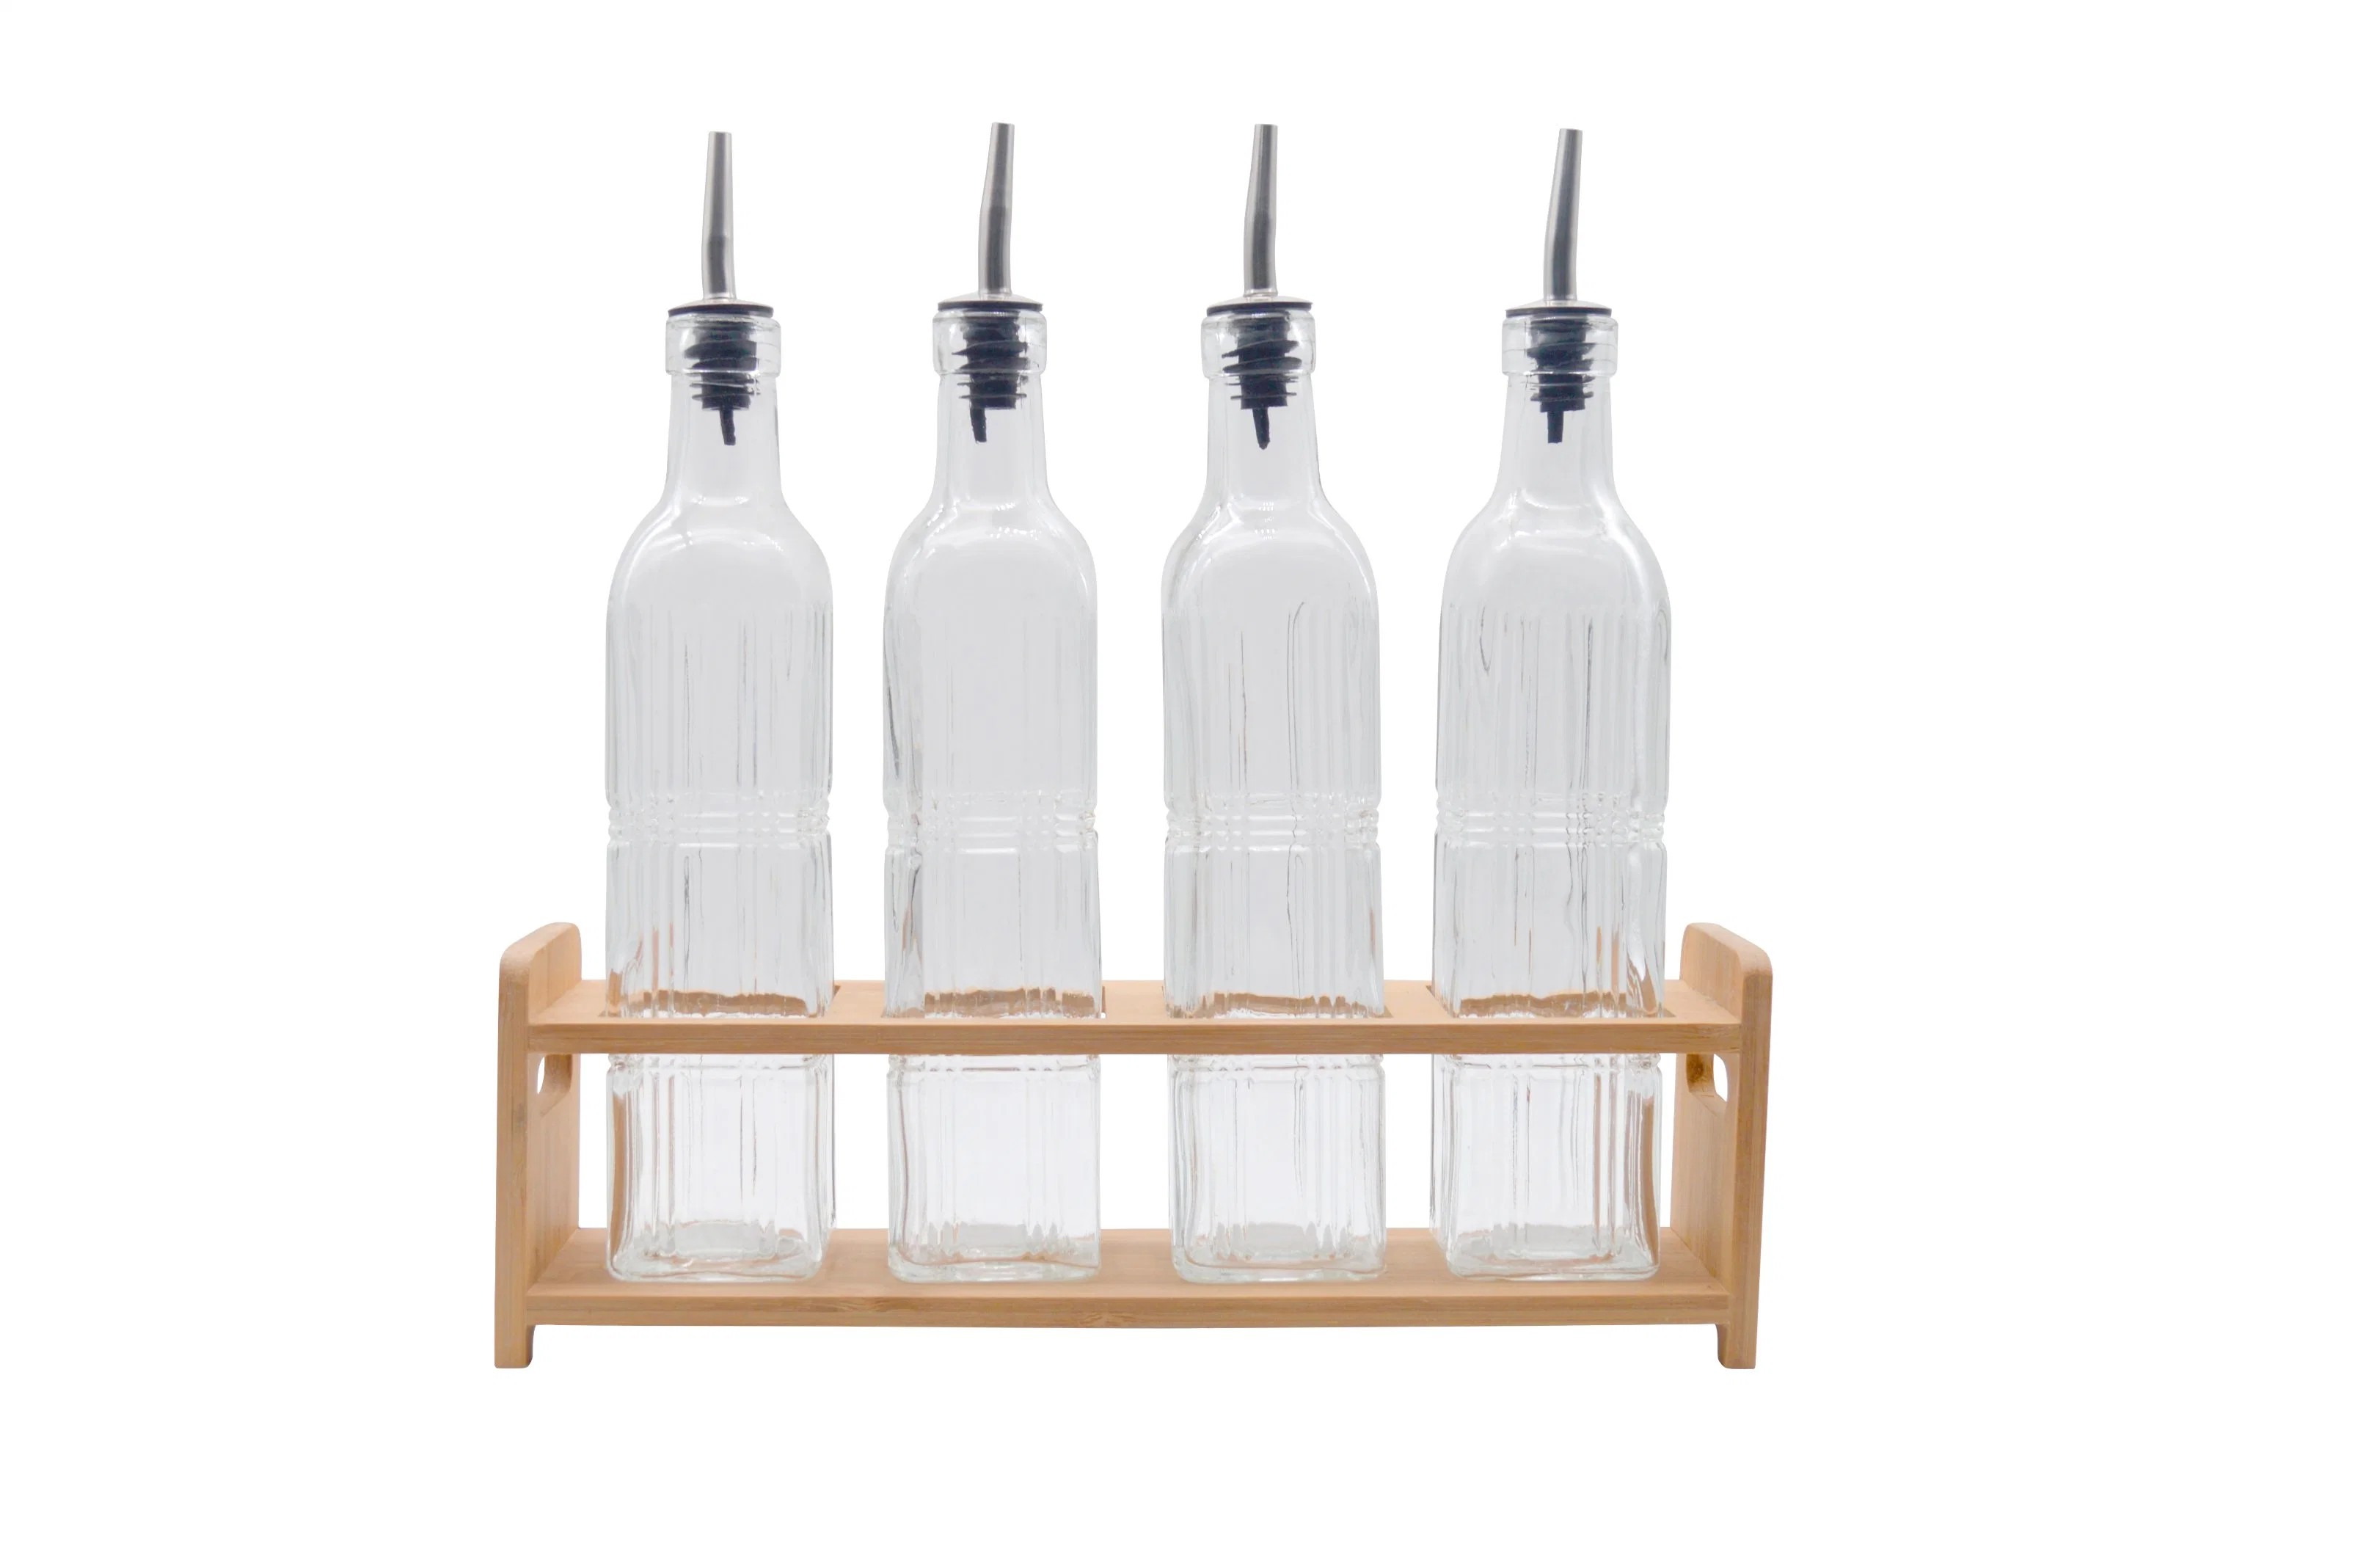 European Household Kitchen Borosilicate Glass Oil Bottles Olive Oil Bottle